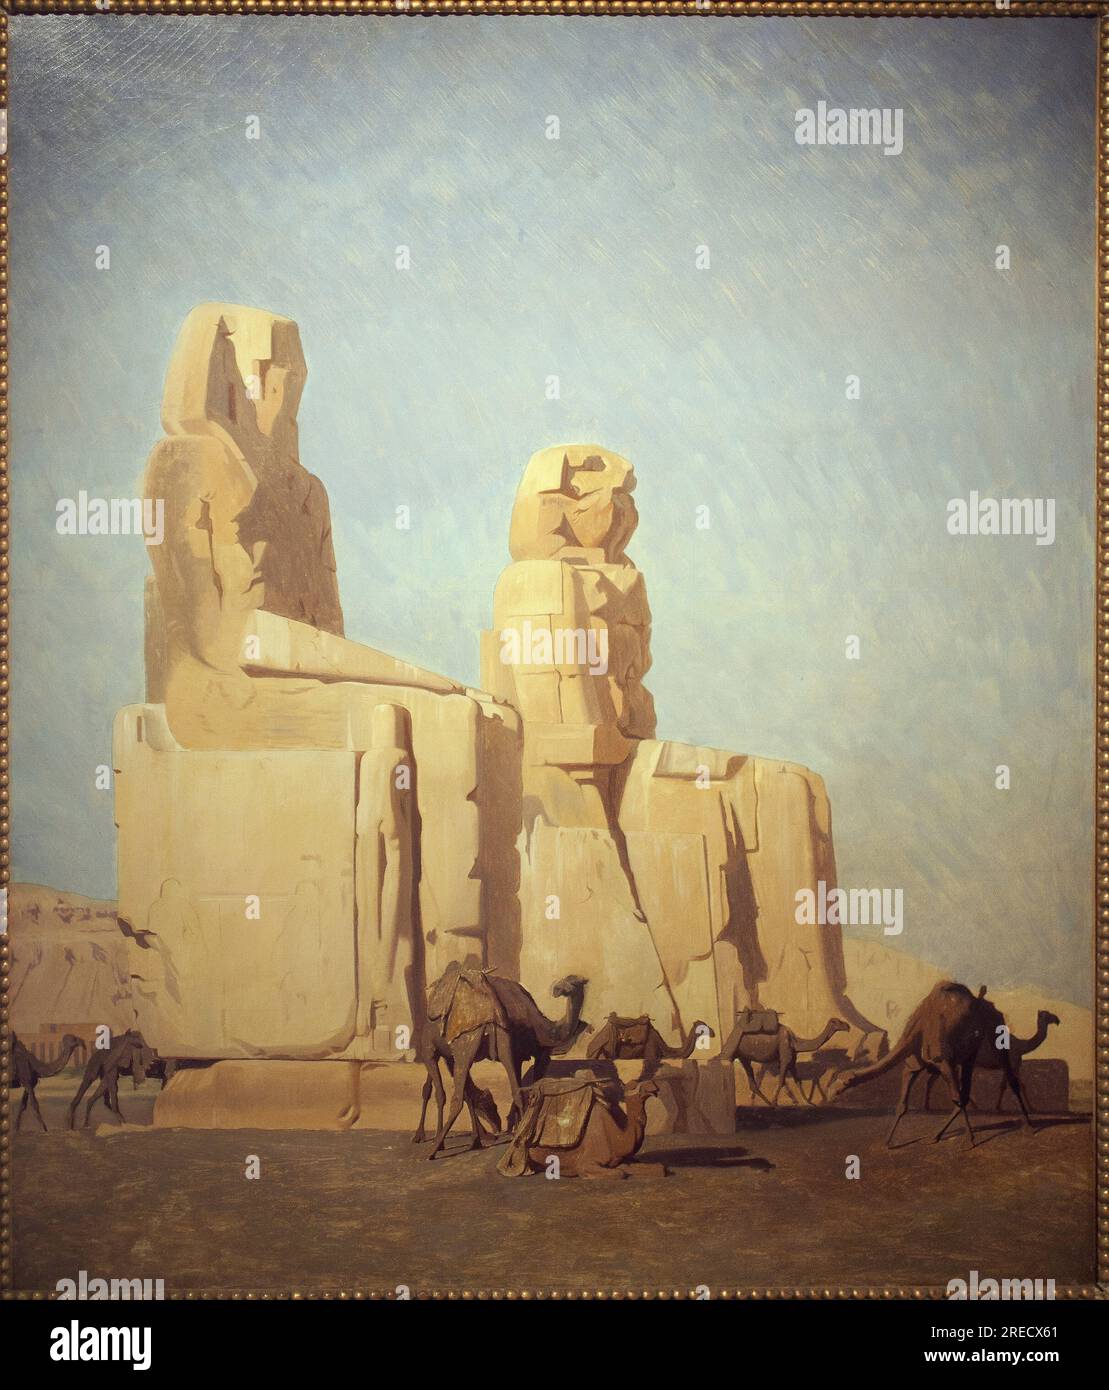 Les colosses de Thebes, Memnon et Sesostris. Etude. Peinture de Jean Leon Gerome (1824-1904), huile sur toile, 1856. Art francais, 19e siecle, orientalisme. Musee de Vesoul. Stock Photo